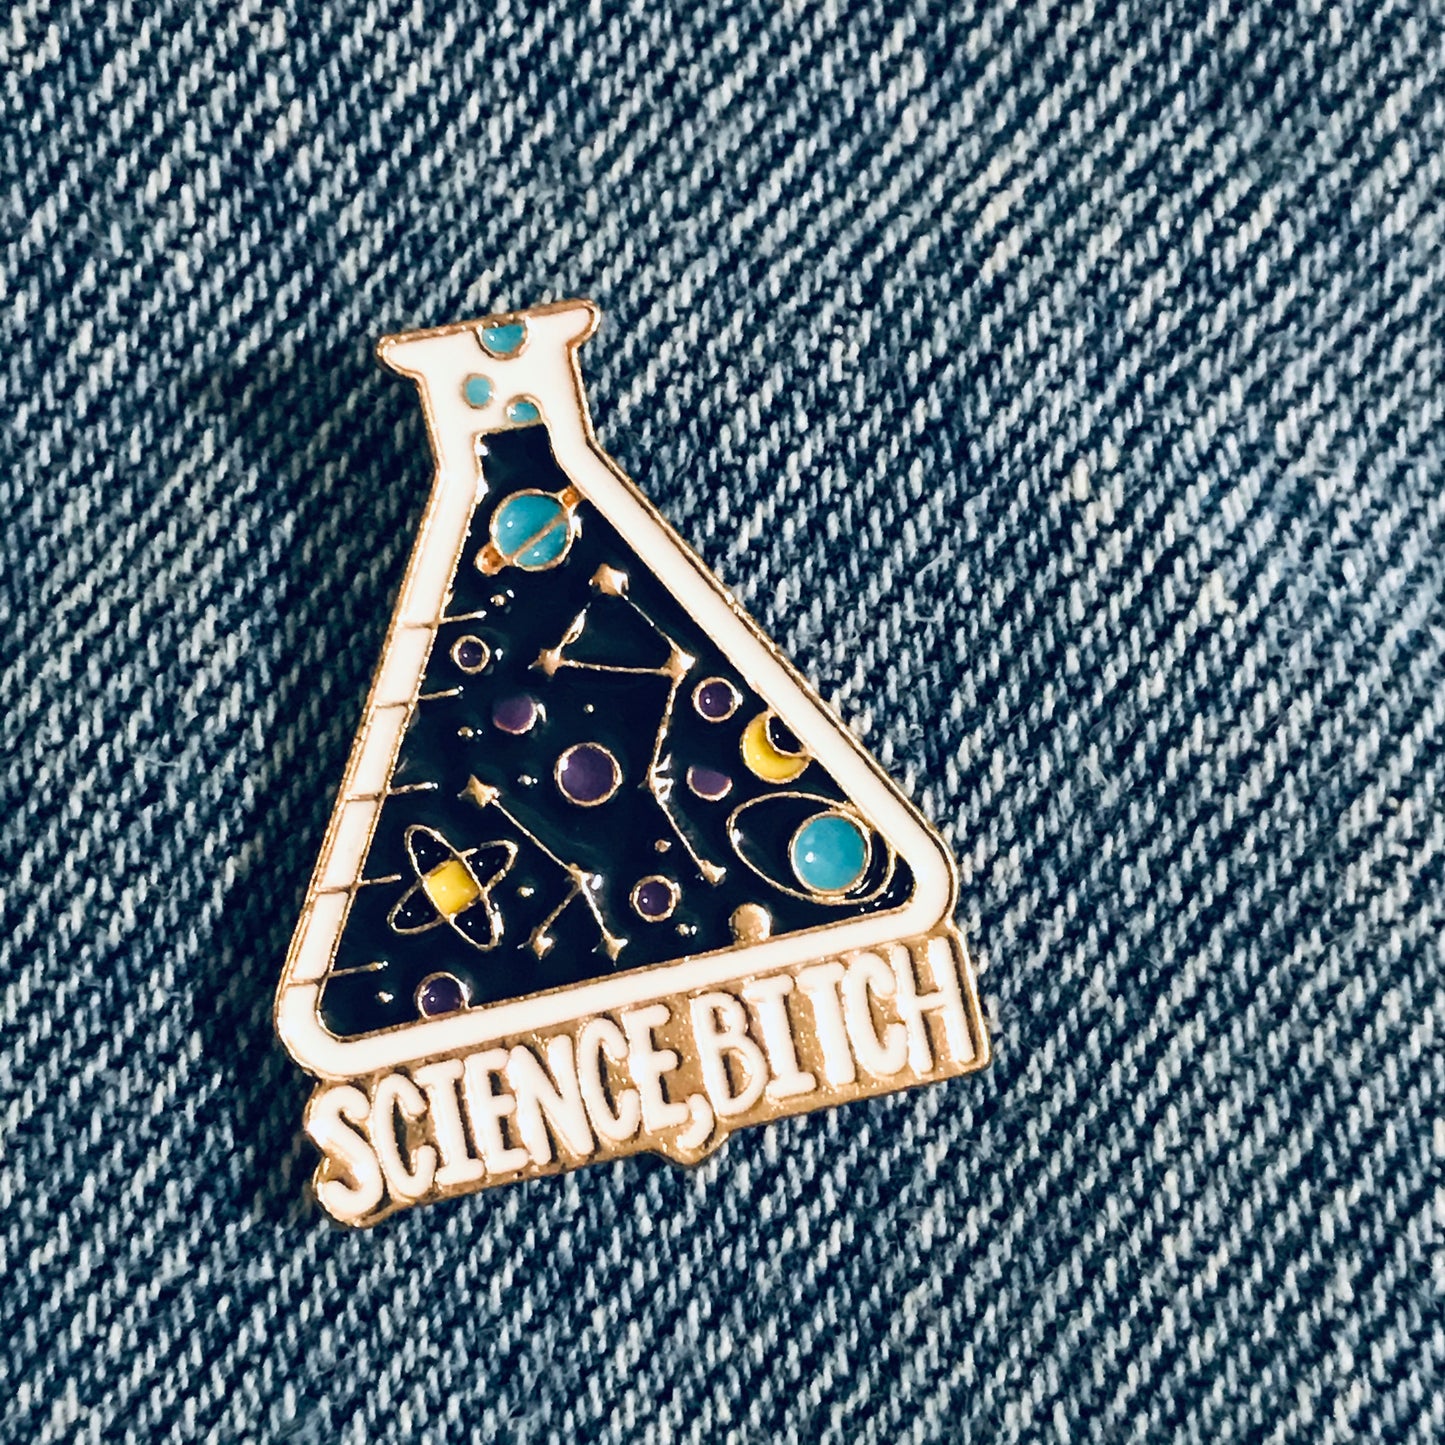 Science Bitch Eenamel pin